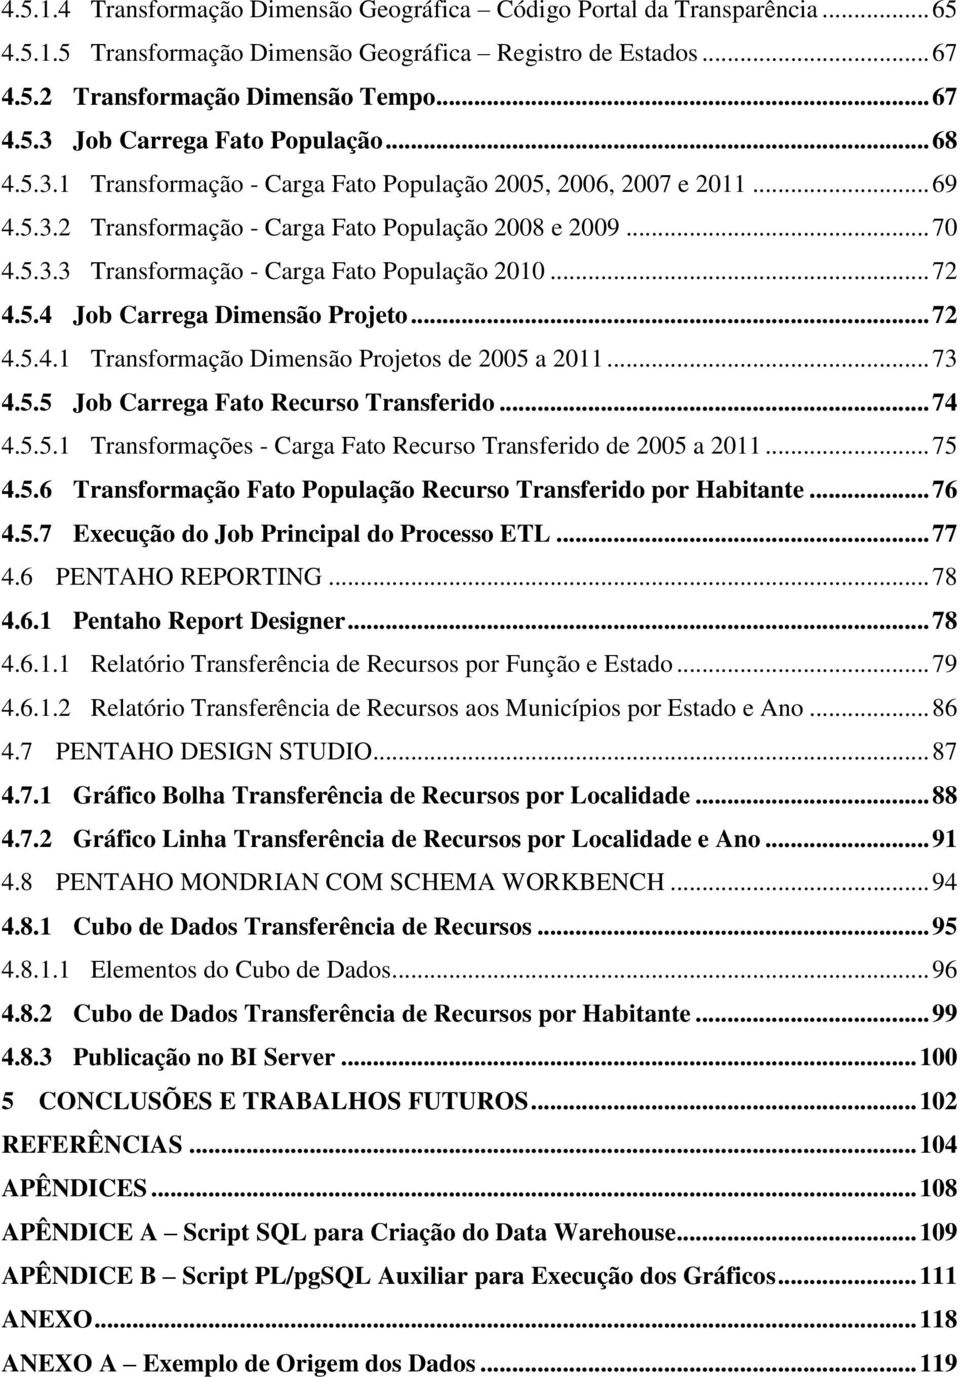 5.4 Job Carrega Dimensão Projeto... 72 4.5.4.1 Transformação Dimensão Projetos de 2005 a 2011... 73 4.5.5 Job Carrega Fato Recurso Transferido... 74 4.5.5.1 Transformações - Carga Fato Recurso Transferido de 2005 a 2011.